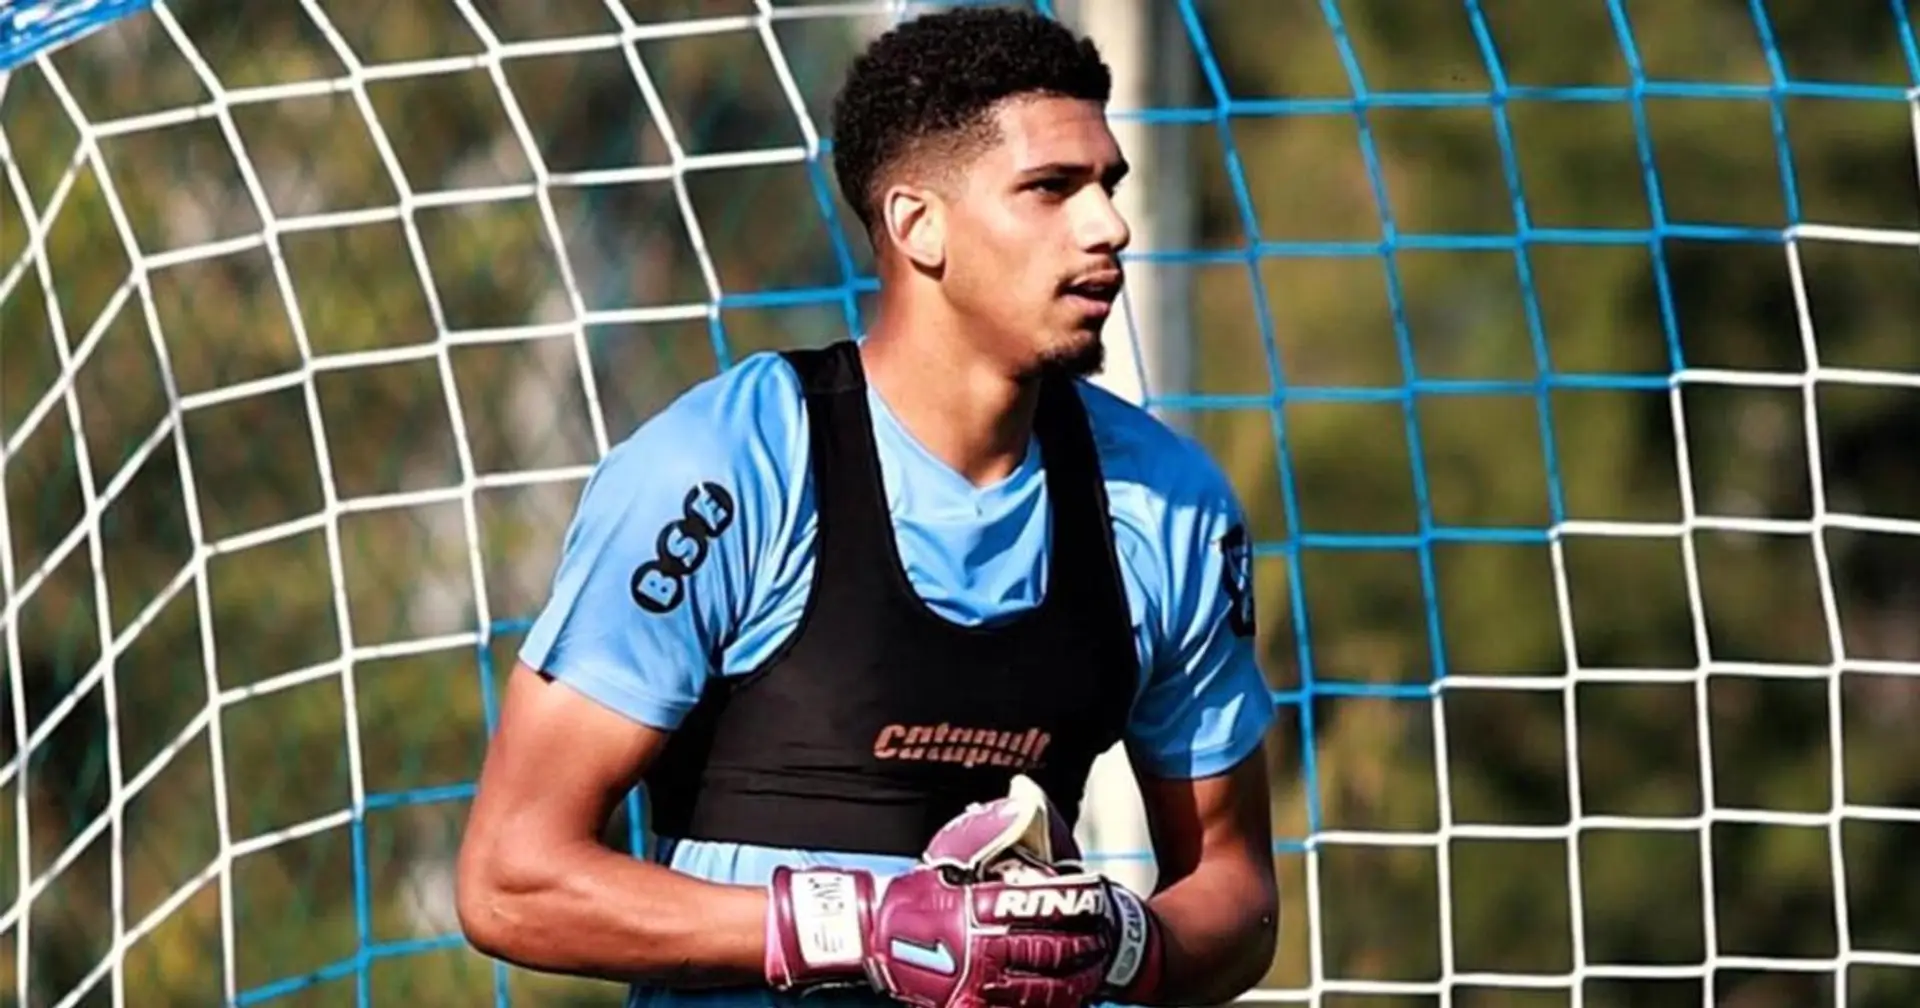 Officiel: Araujo pas sélectionné dans l'équipe uruguayenne pour les éliminatoires de la Coupe du monde